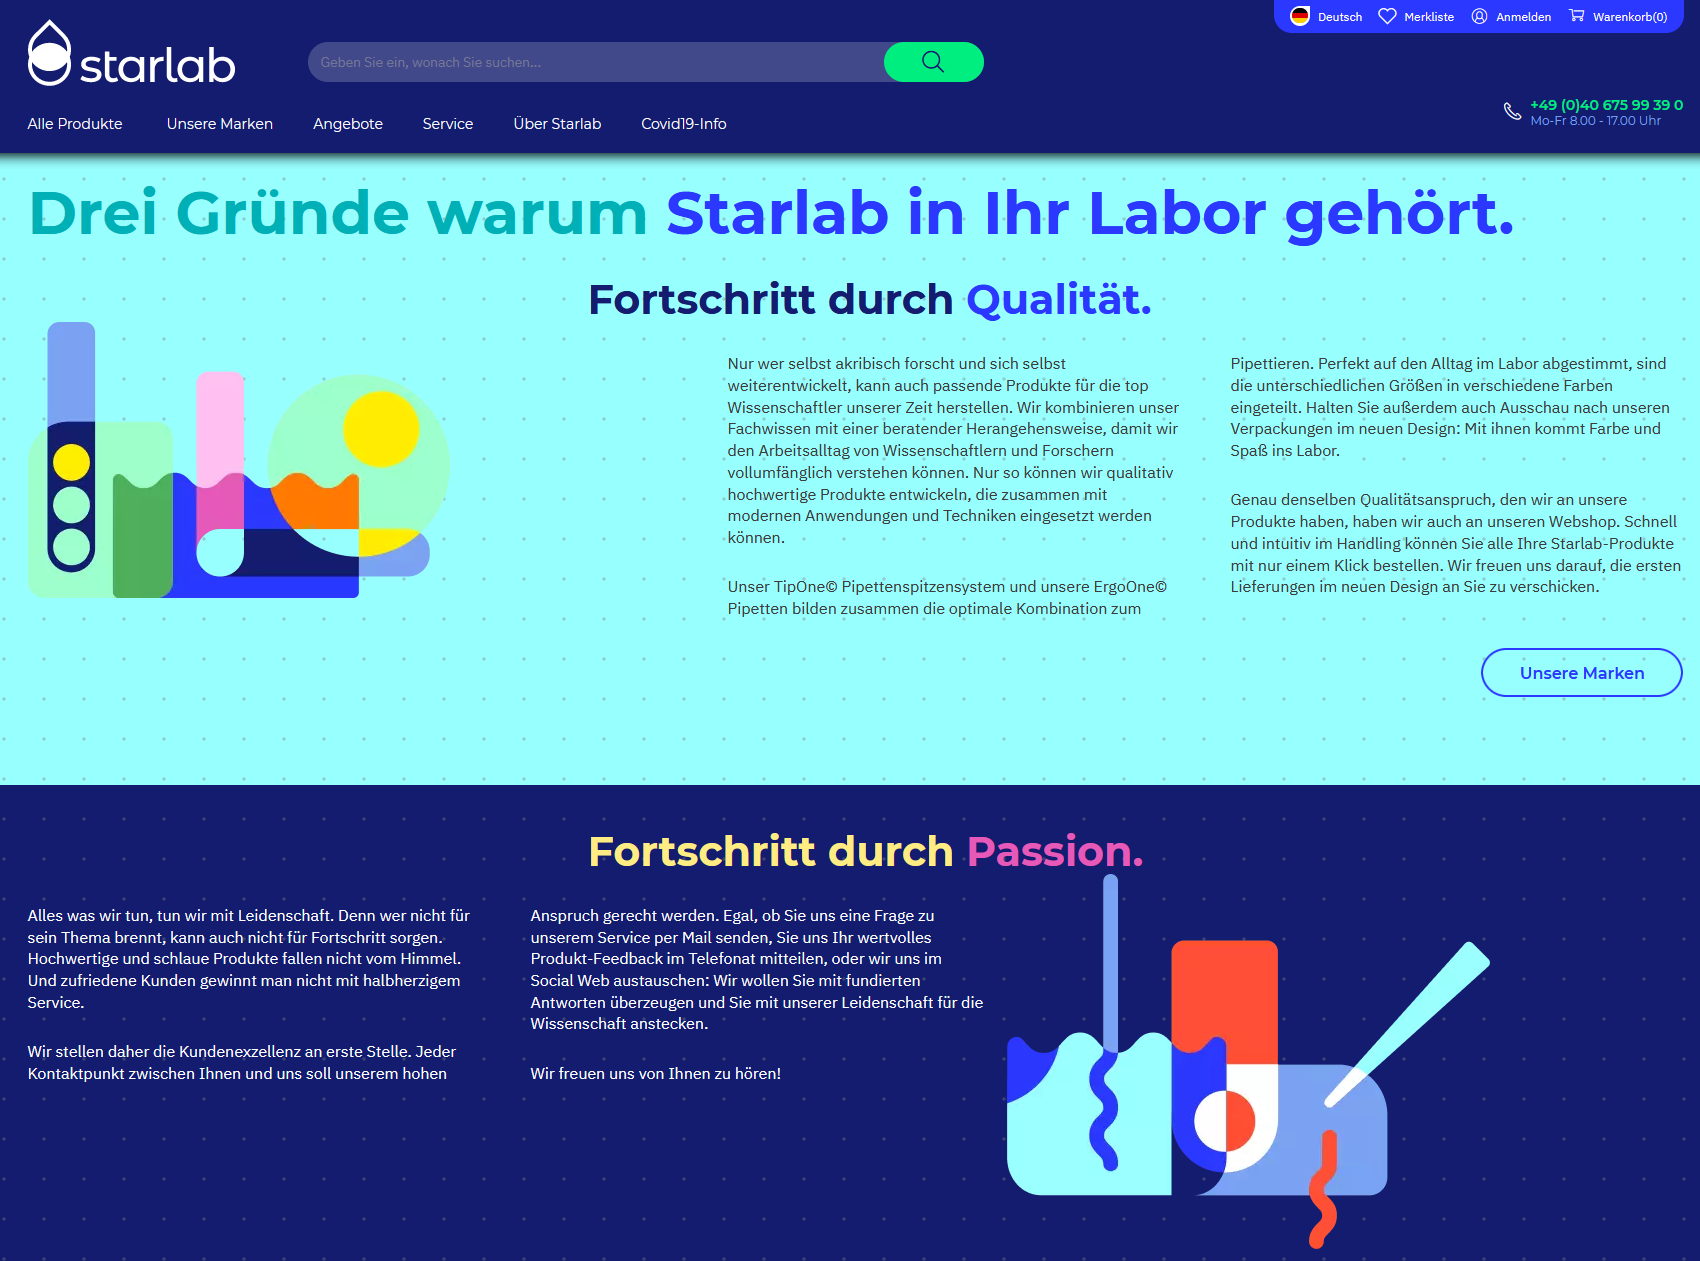 starlab adobe commerce plattform b2b